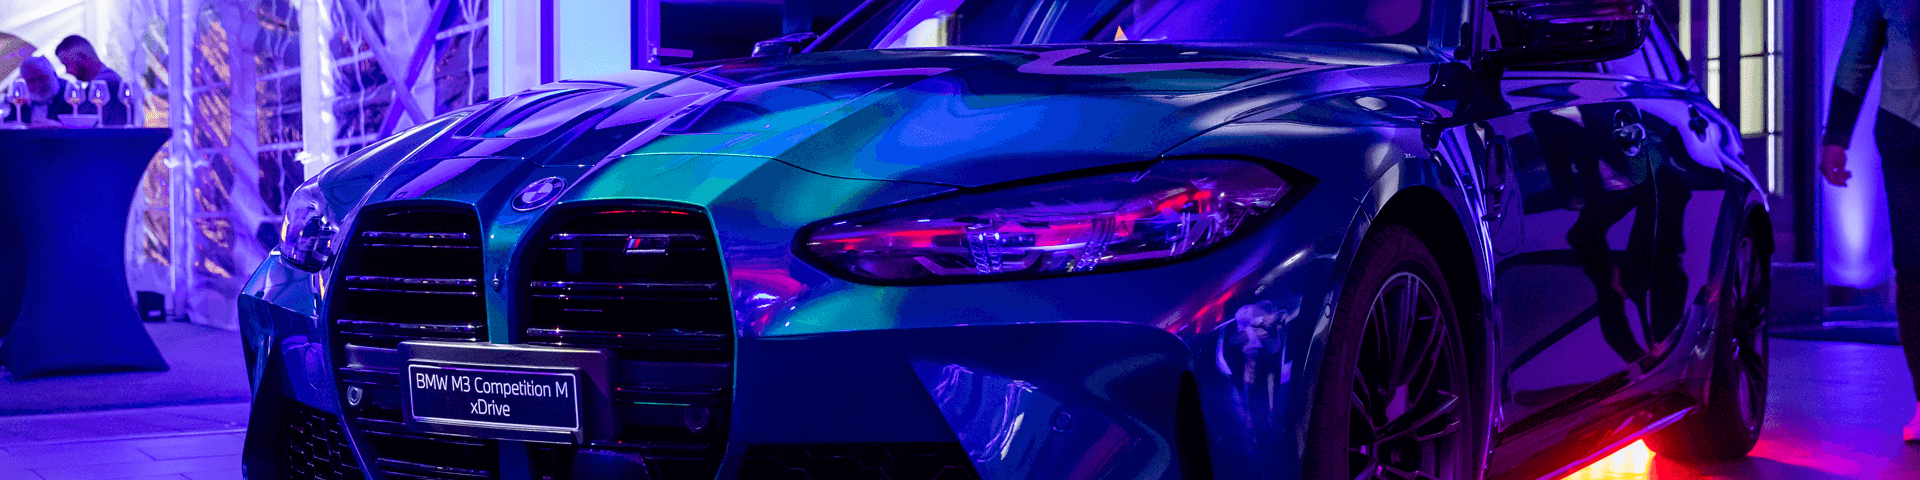 Presentazione della nuova BMW M3 Competition xDrive Touring